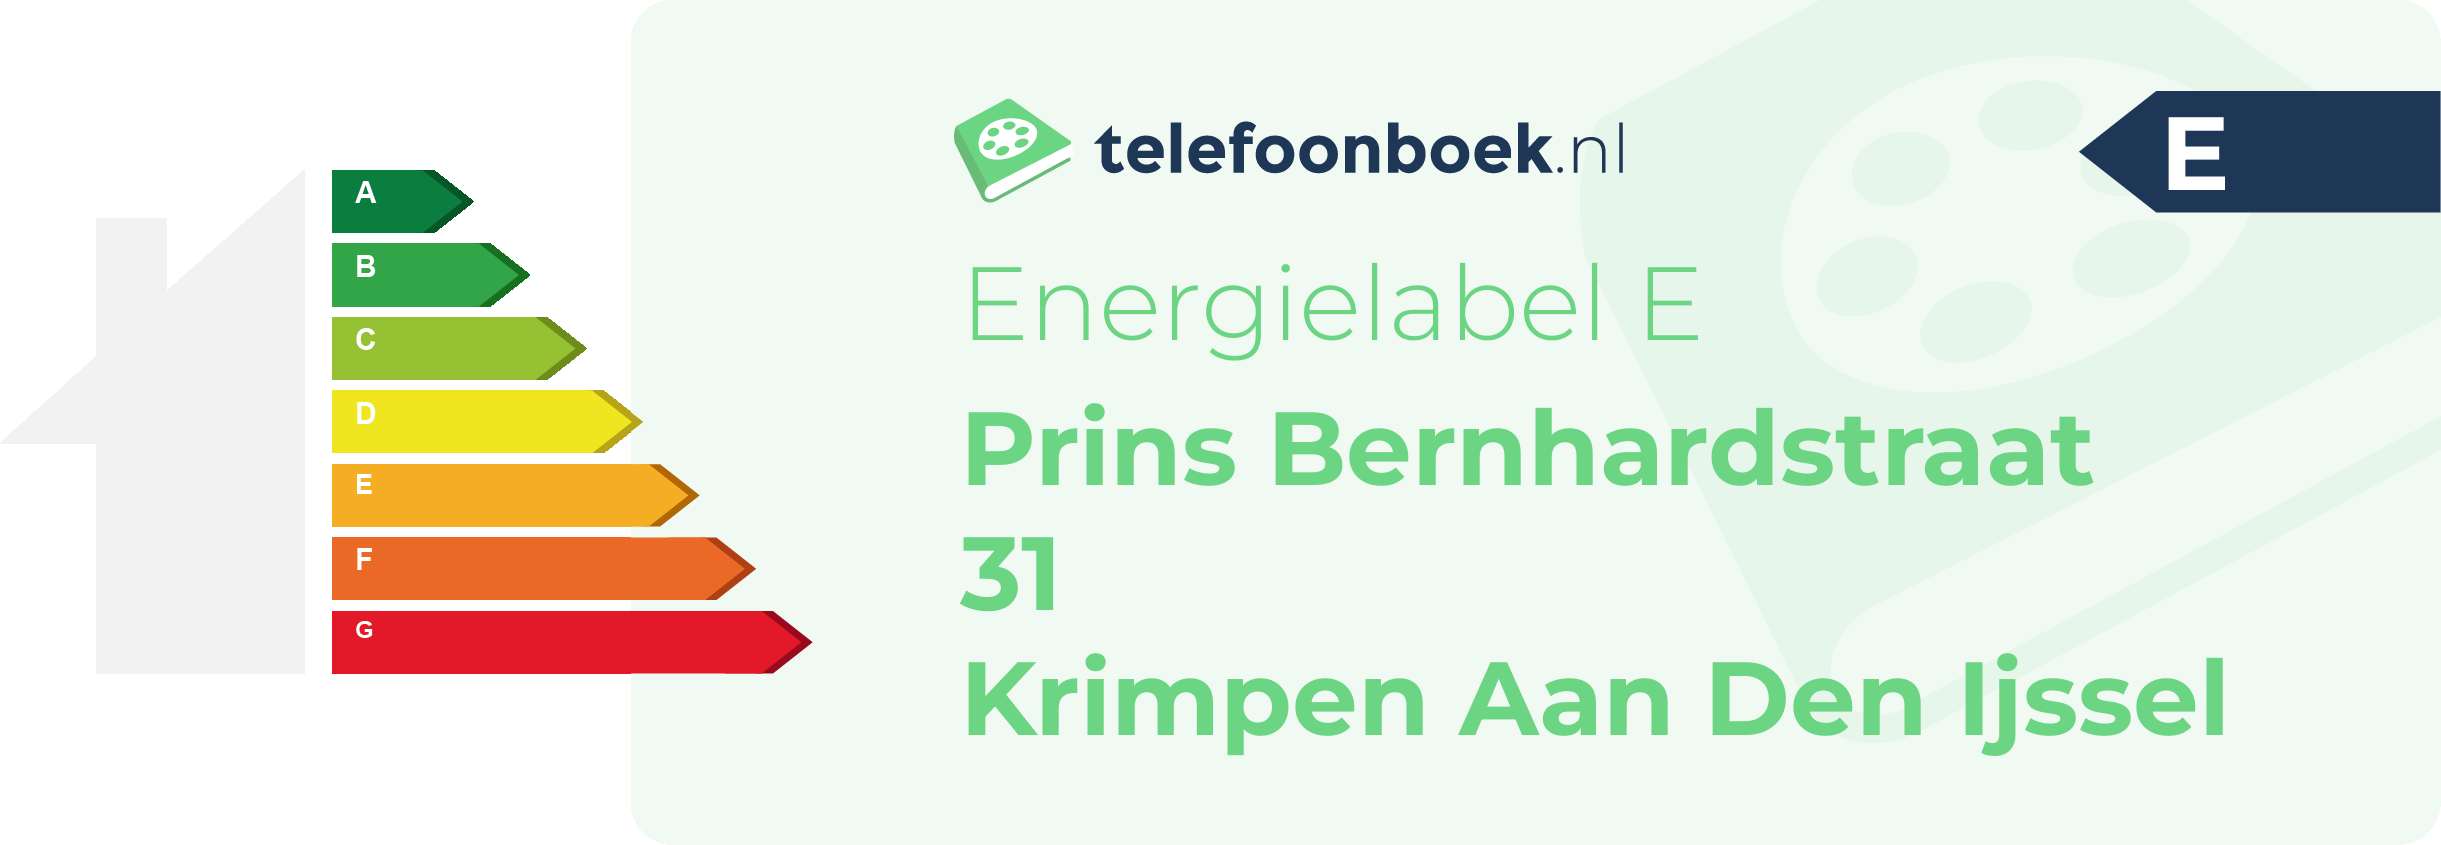 Energielabel Prins Bernhardstraat 31 Krimpen Aan Den Ijssel